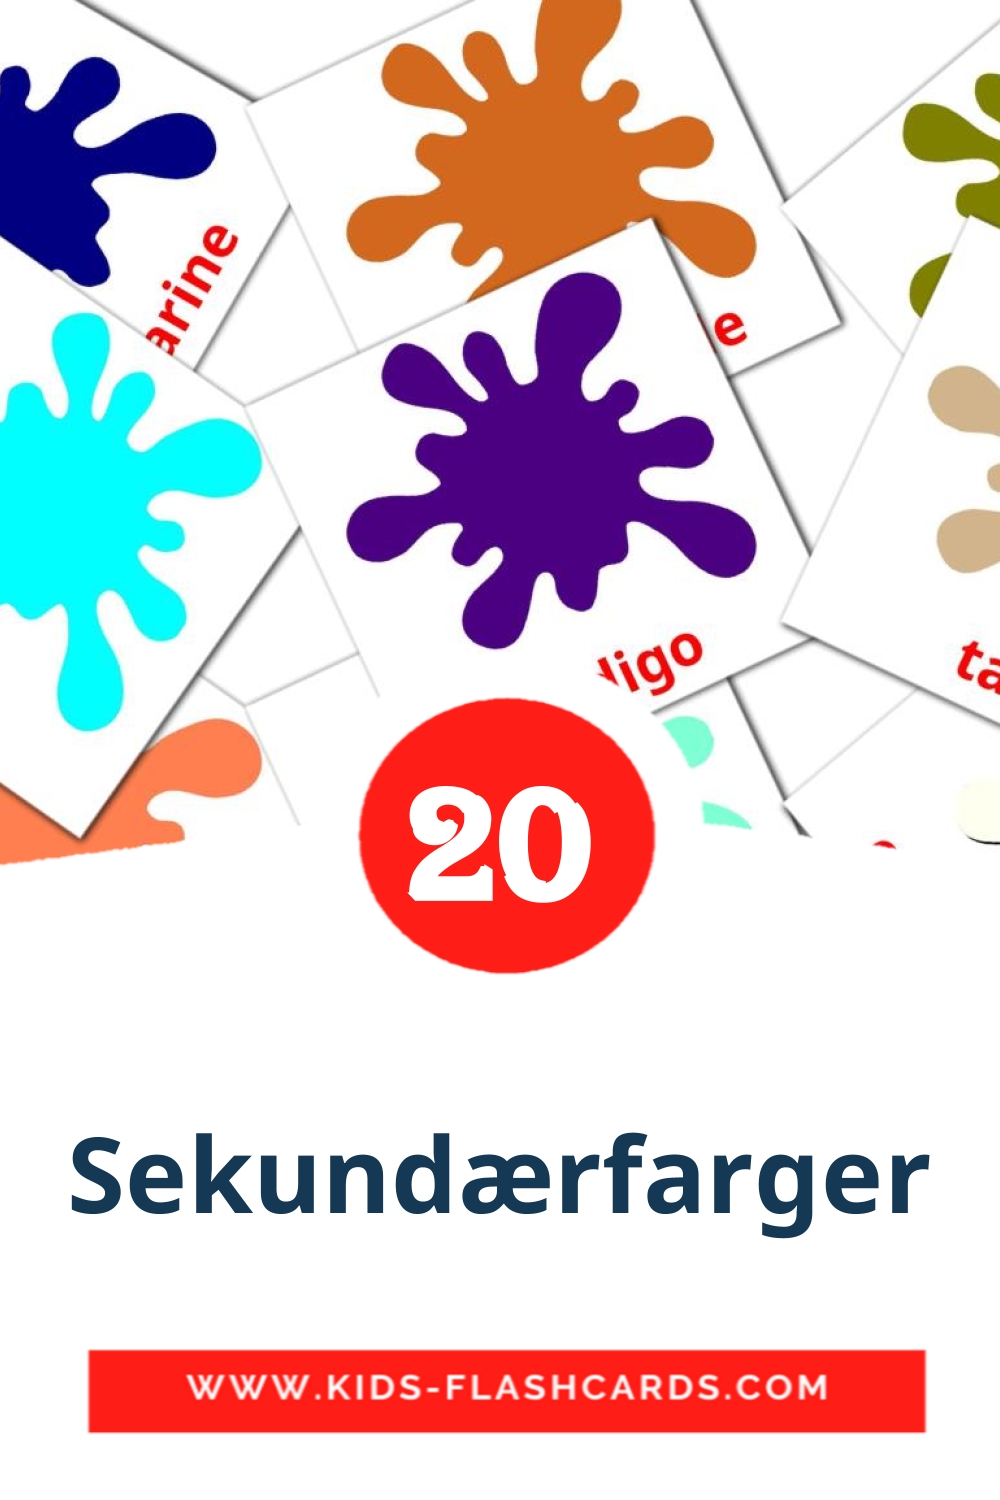 Sekundærfarger на норвежском для Детского Сада (20 карточек)